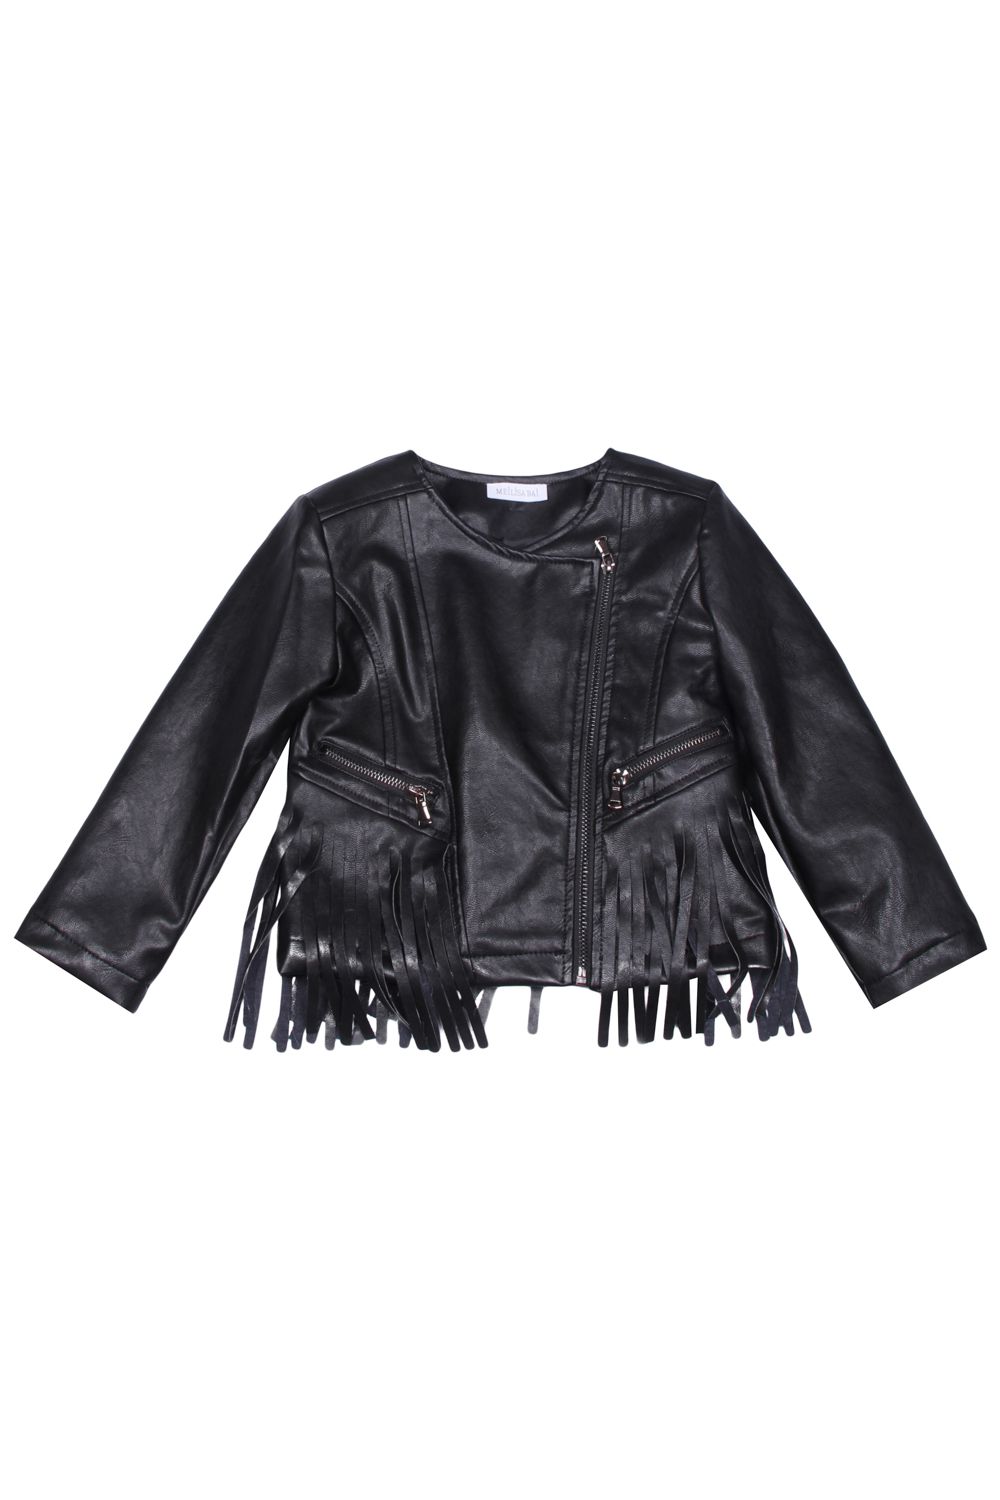 Куртка Meilisa Bai, размер 98, цвет черный FL0857 - фото 1